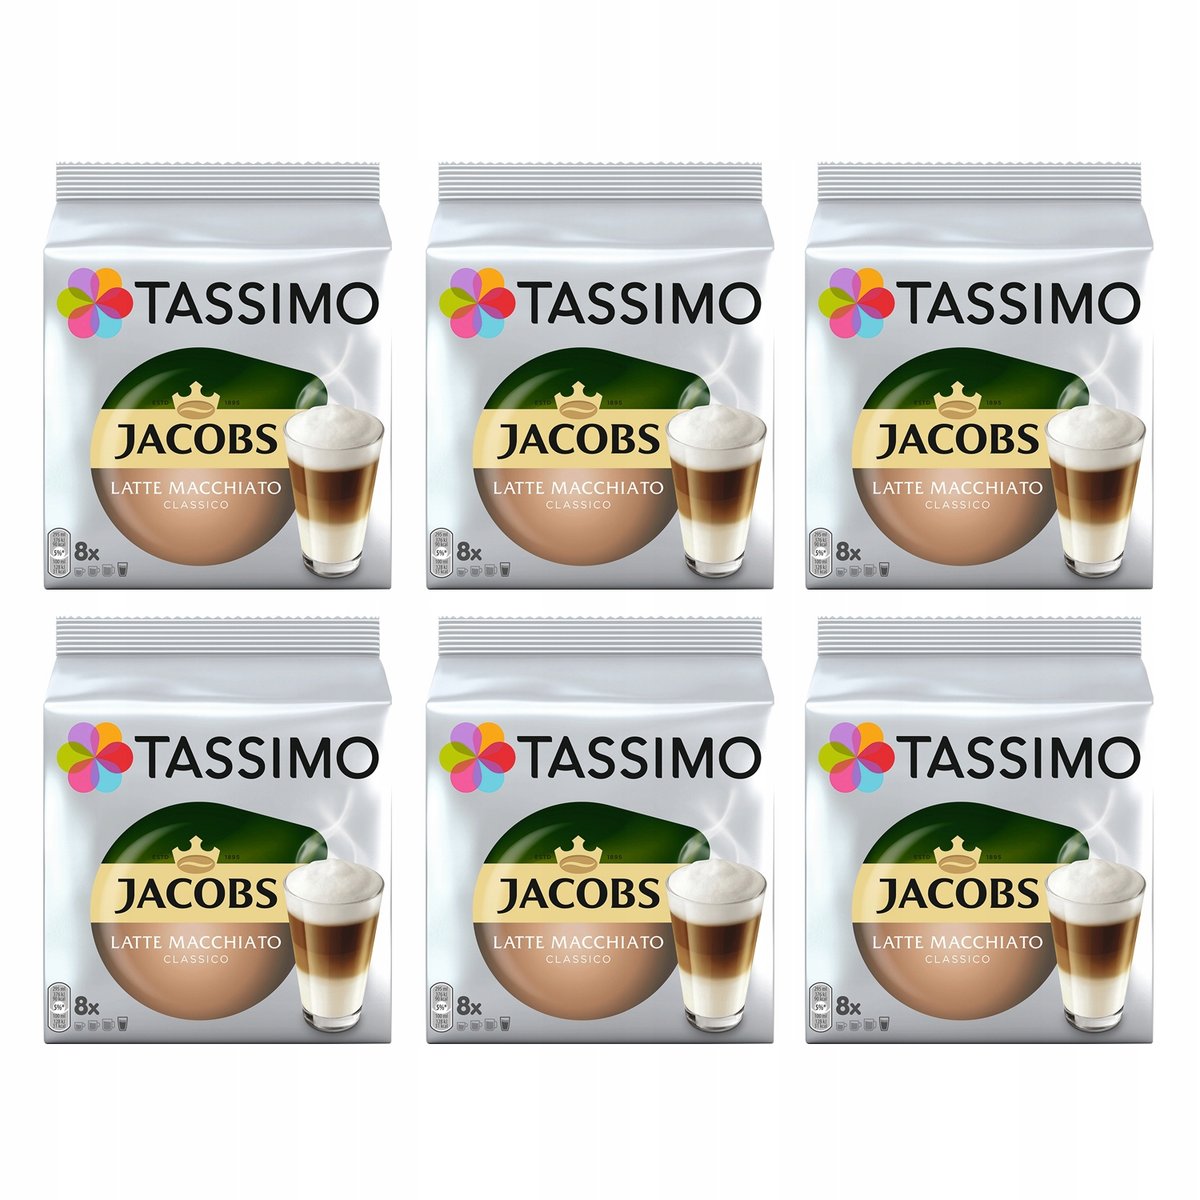 TASSIMO Café Assortiment 5 variétés - Latte Macchiato, Cappuccino